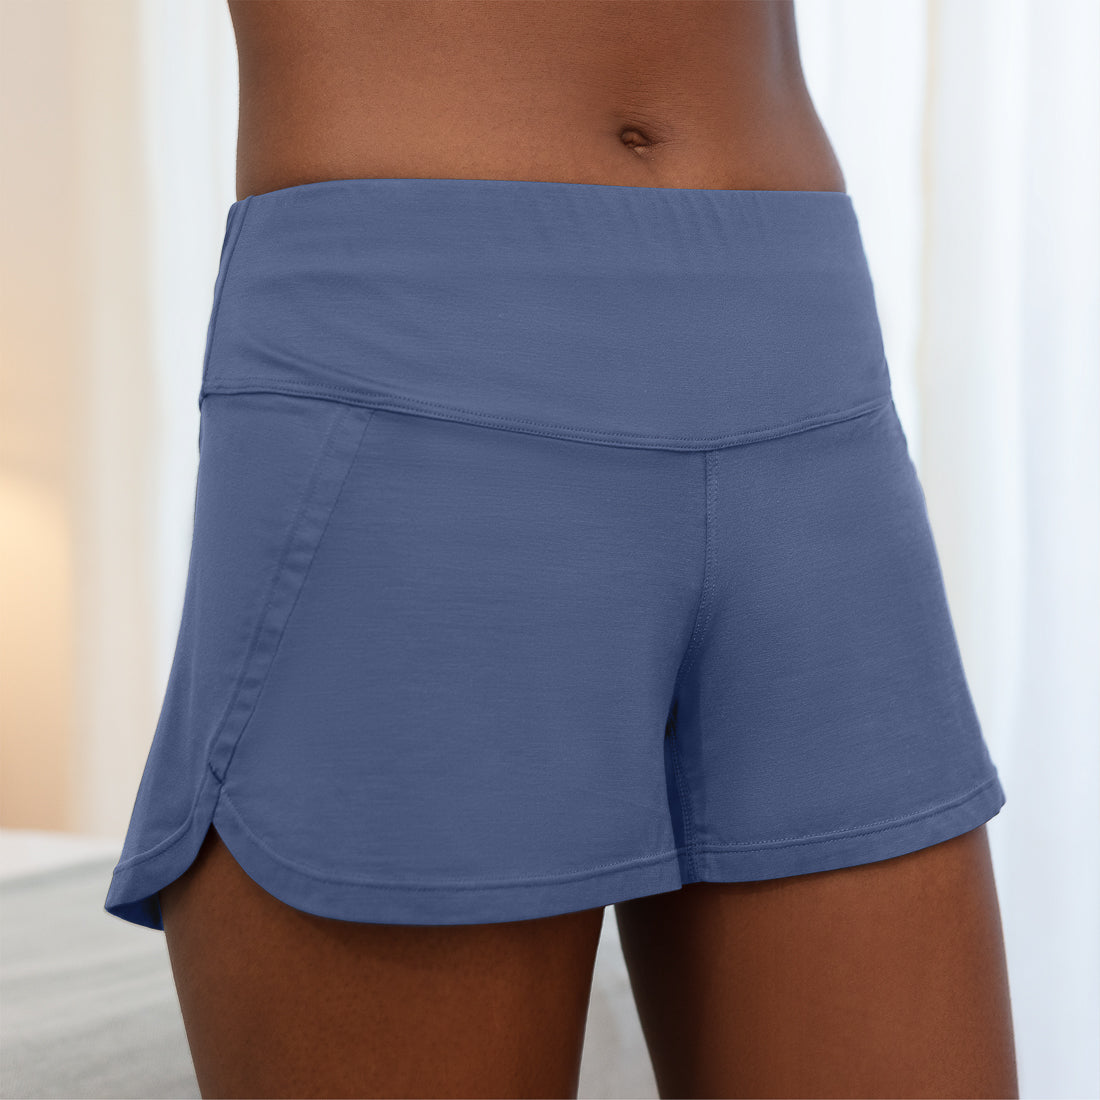 Women's cooling pajamas shorts || Coastal blue